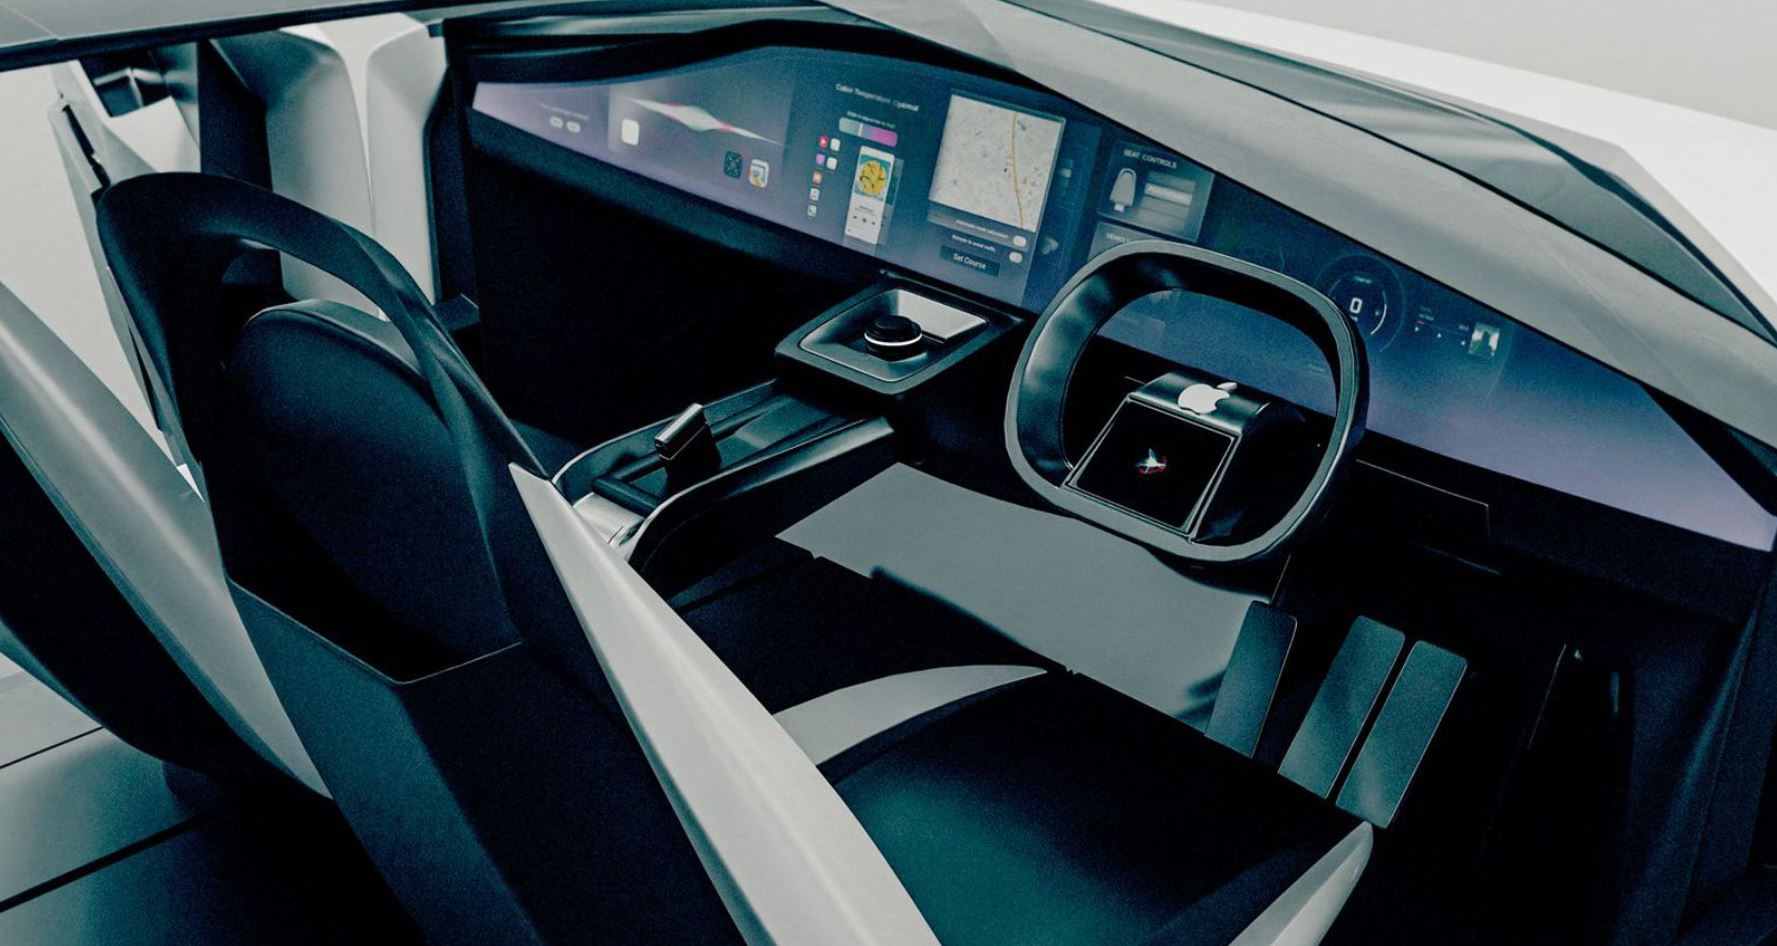 เผยภาพเรนเดอร์ดีไซน์ Apple Car รถยนต์ไฟฟ้าระบบขับเคลื่อนอัตโนมัติของ Apple